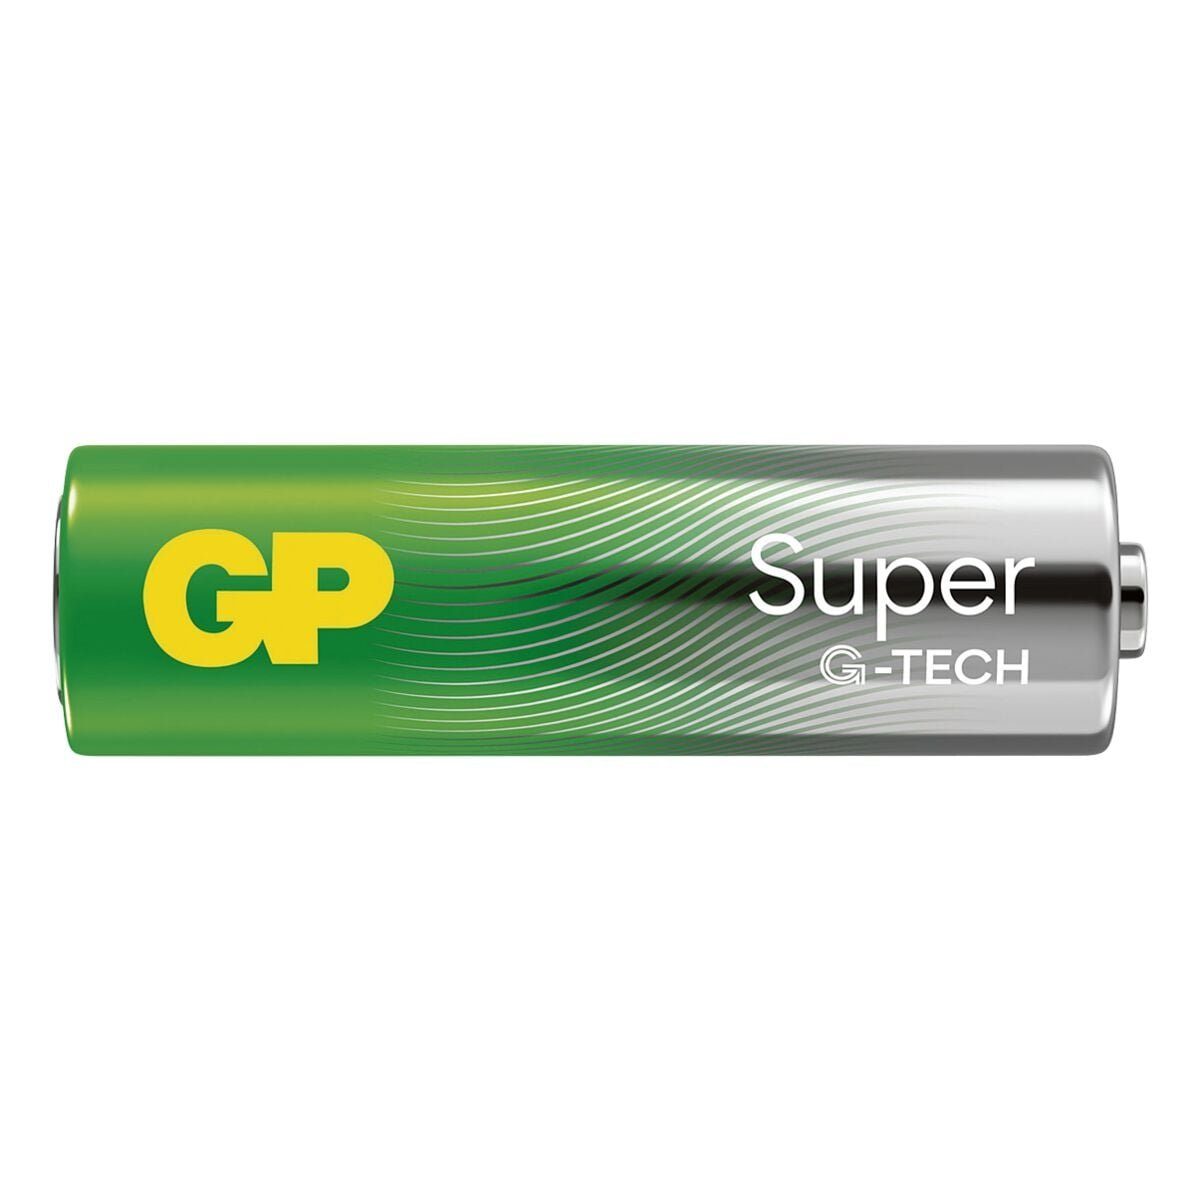 Mignon / Alkali St), / GP 1,5 Batterie, AA Super / LR06 Alkaline V, 16 V, (1.5 LR6, Batteries